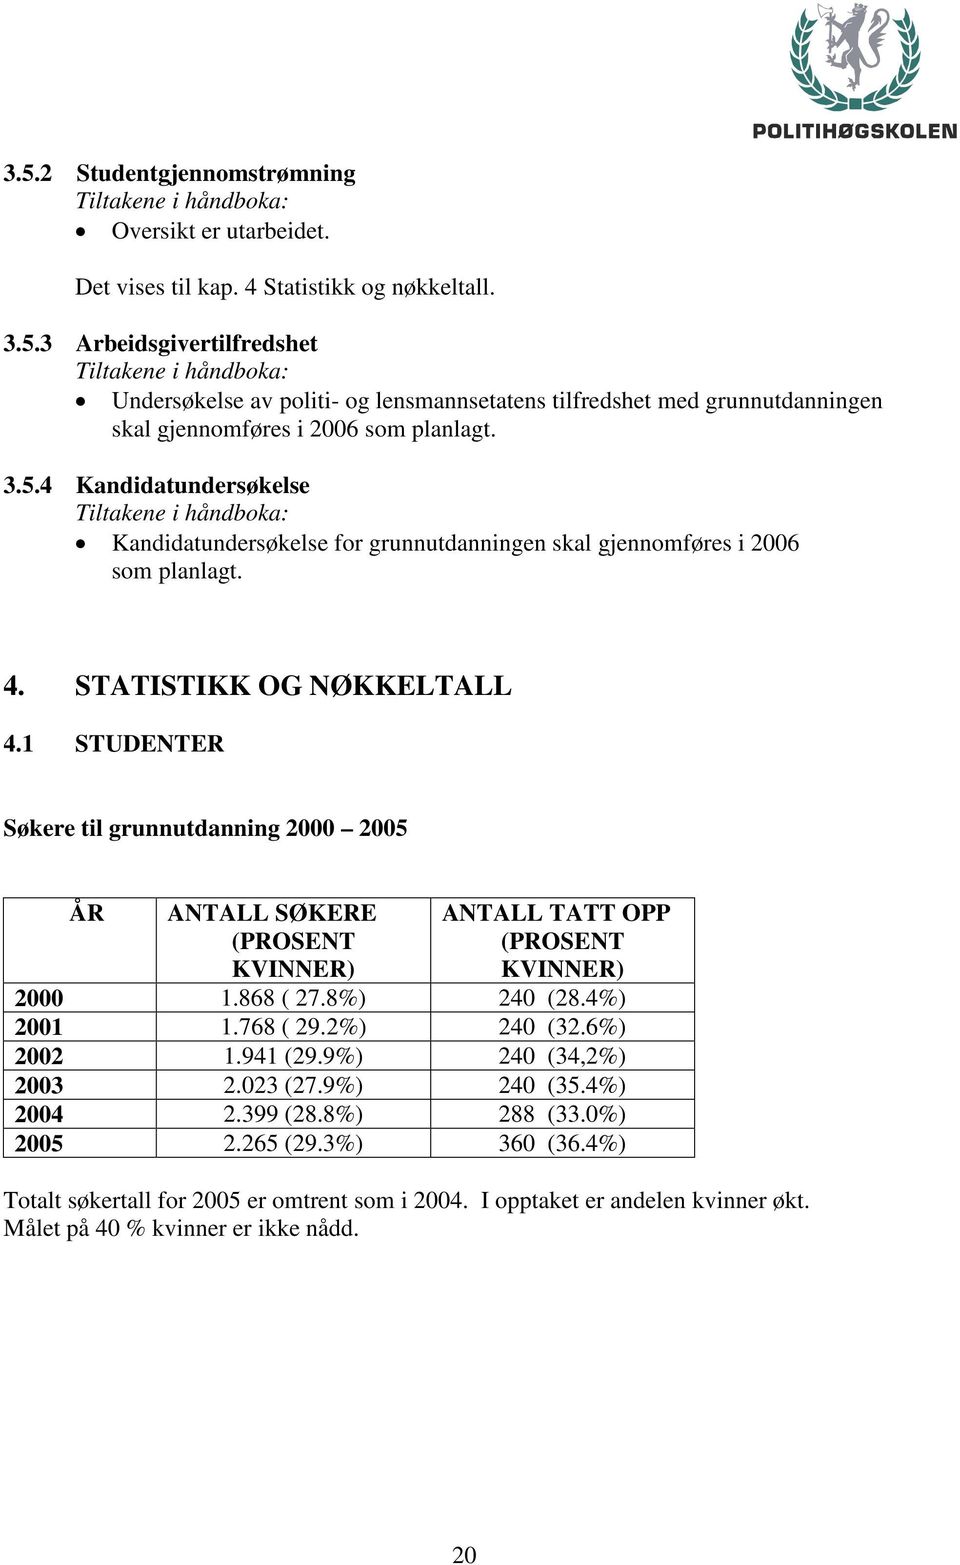 1 STUDENTER Søkere til grunnutdanning 2000 2005 ÅR ANTALL SØKERE (PROSENT KVINNER) ANTALL TATT OPP (PROSENT KVINNER) 2000 1.868 ( 27.8%) 240 (28.4%) 2001 1.768 ( 29.2%) 240 (32.6%) 2002 1.941 (29.